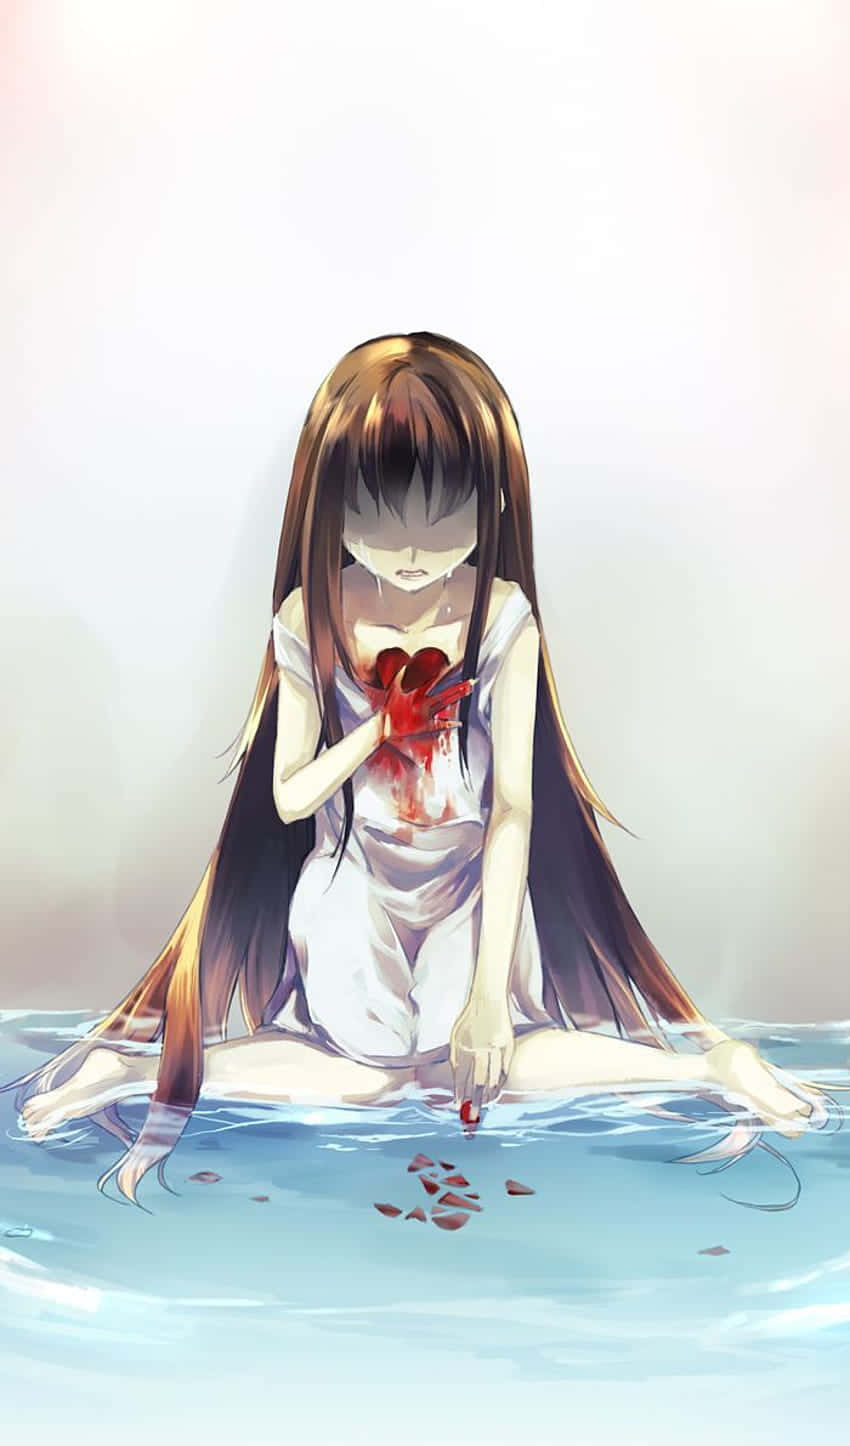 Stream Anime Heartbreak by Lil PieO | Listen online for free on SoundCloud